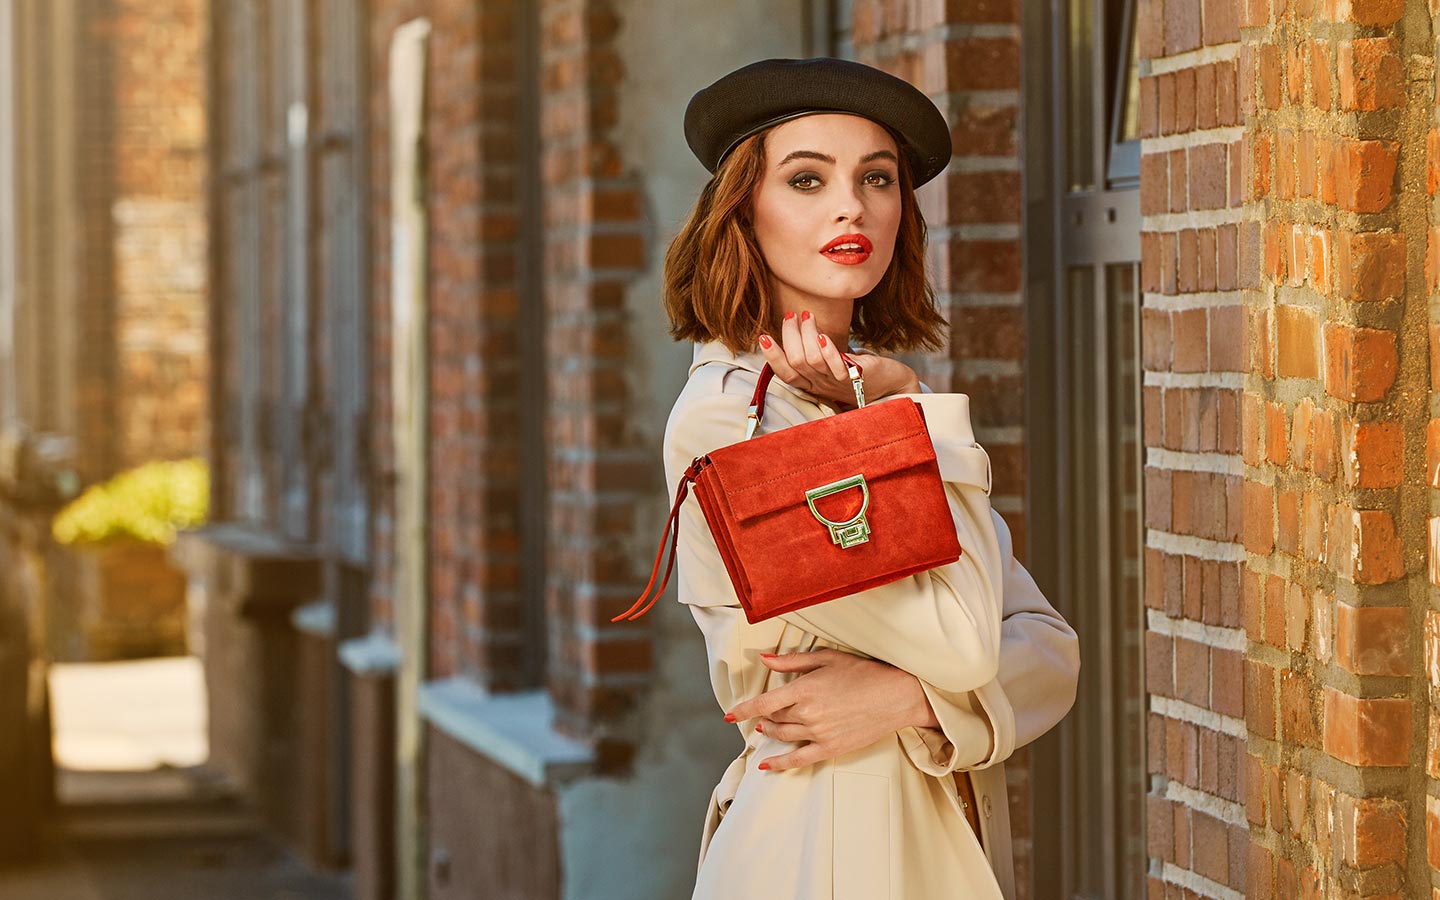 Buy designer handbags & accessories online – fashionette